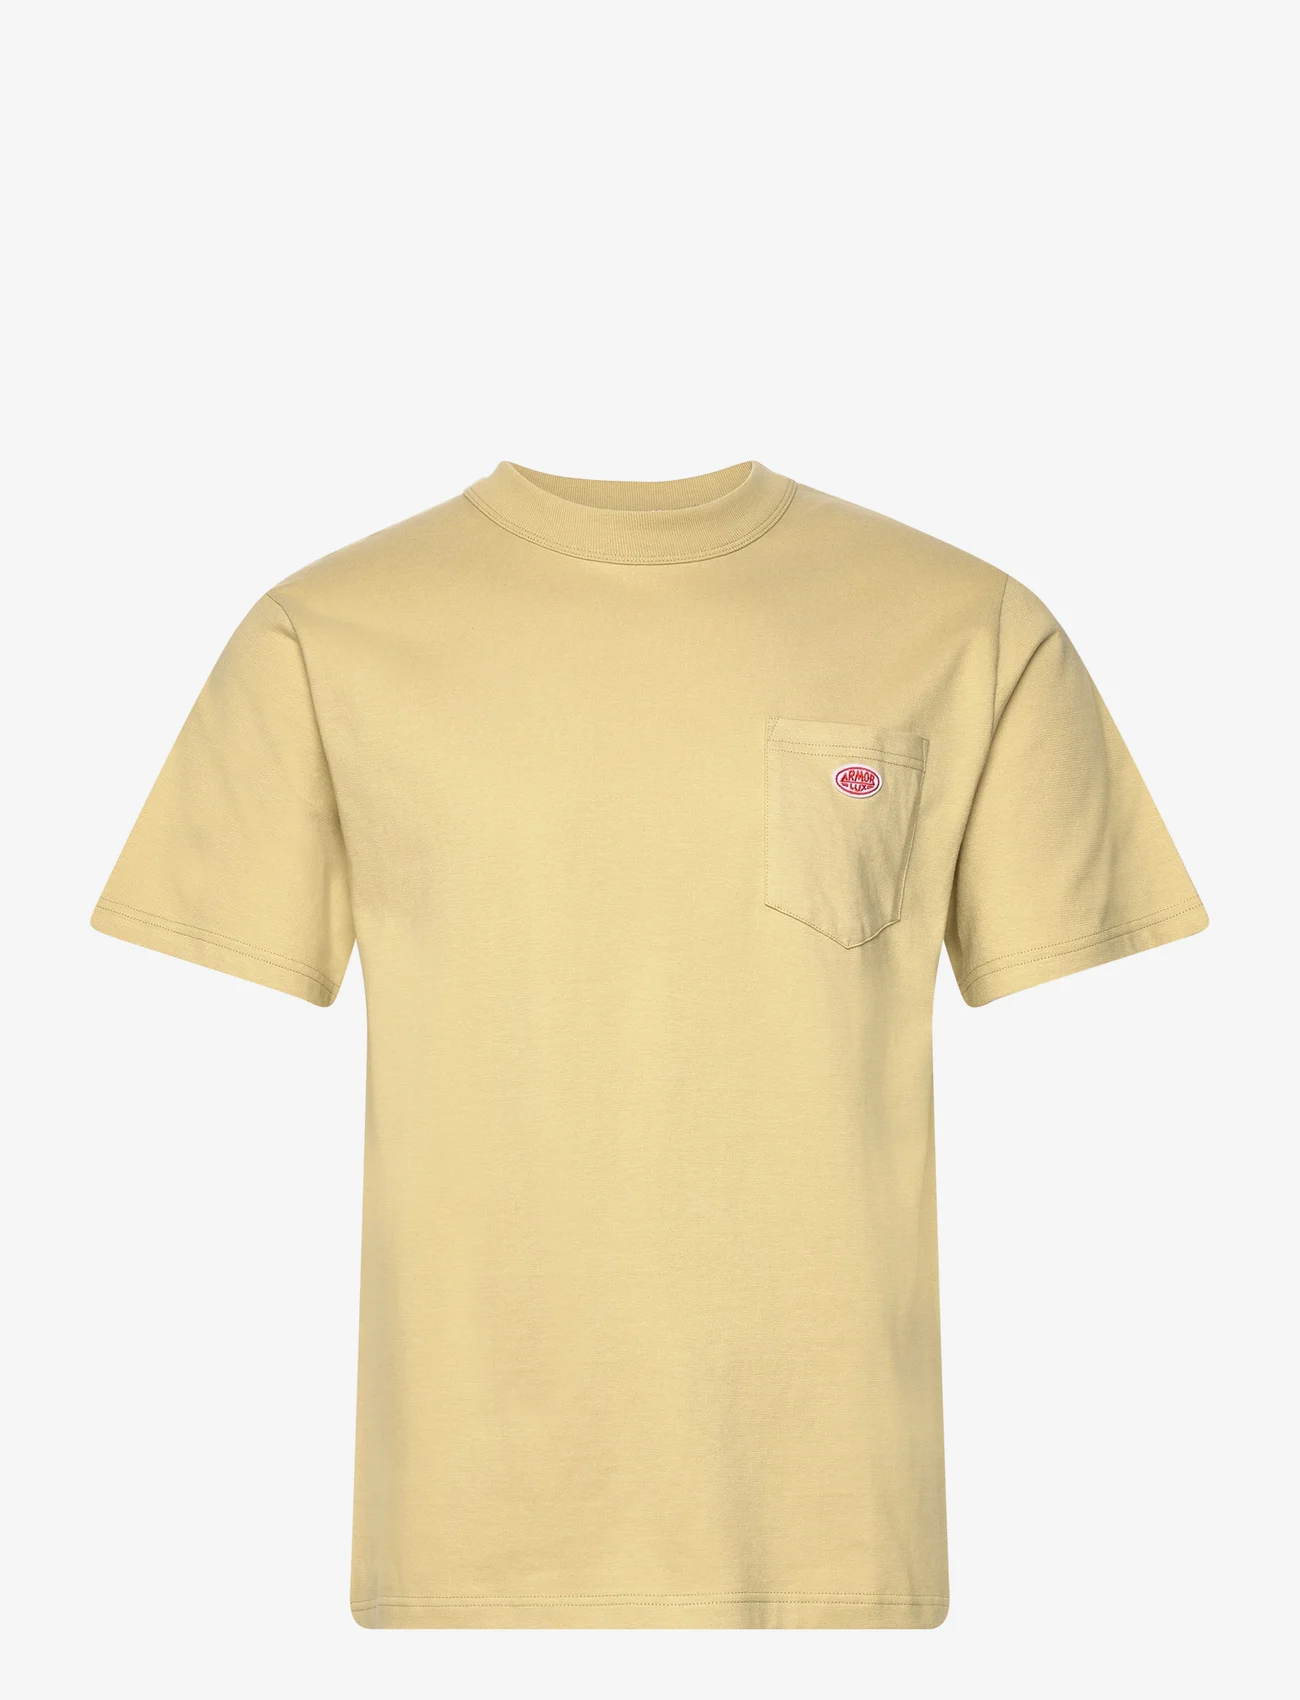 Armor Lux - Basic Pocket T-shirt Héritage - najniższe ceny - pale olive - 0